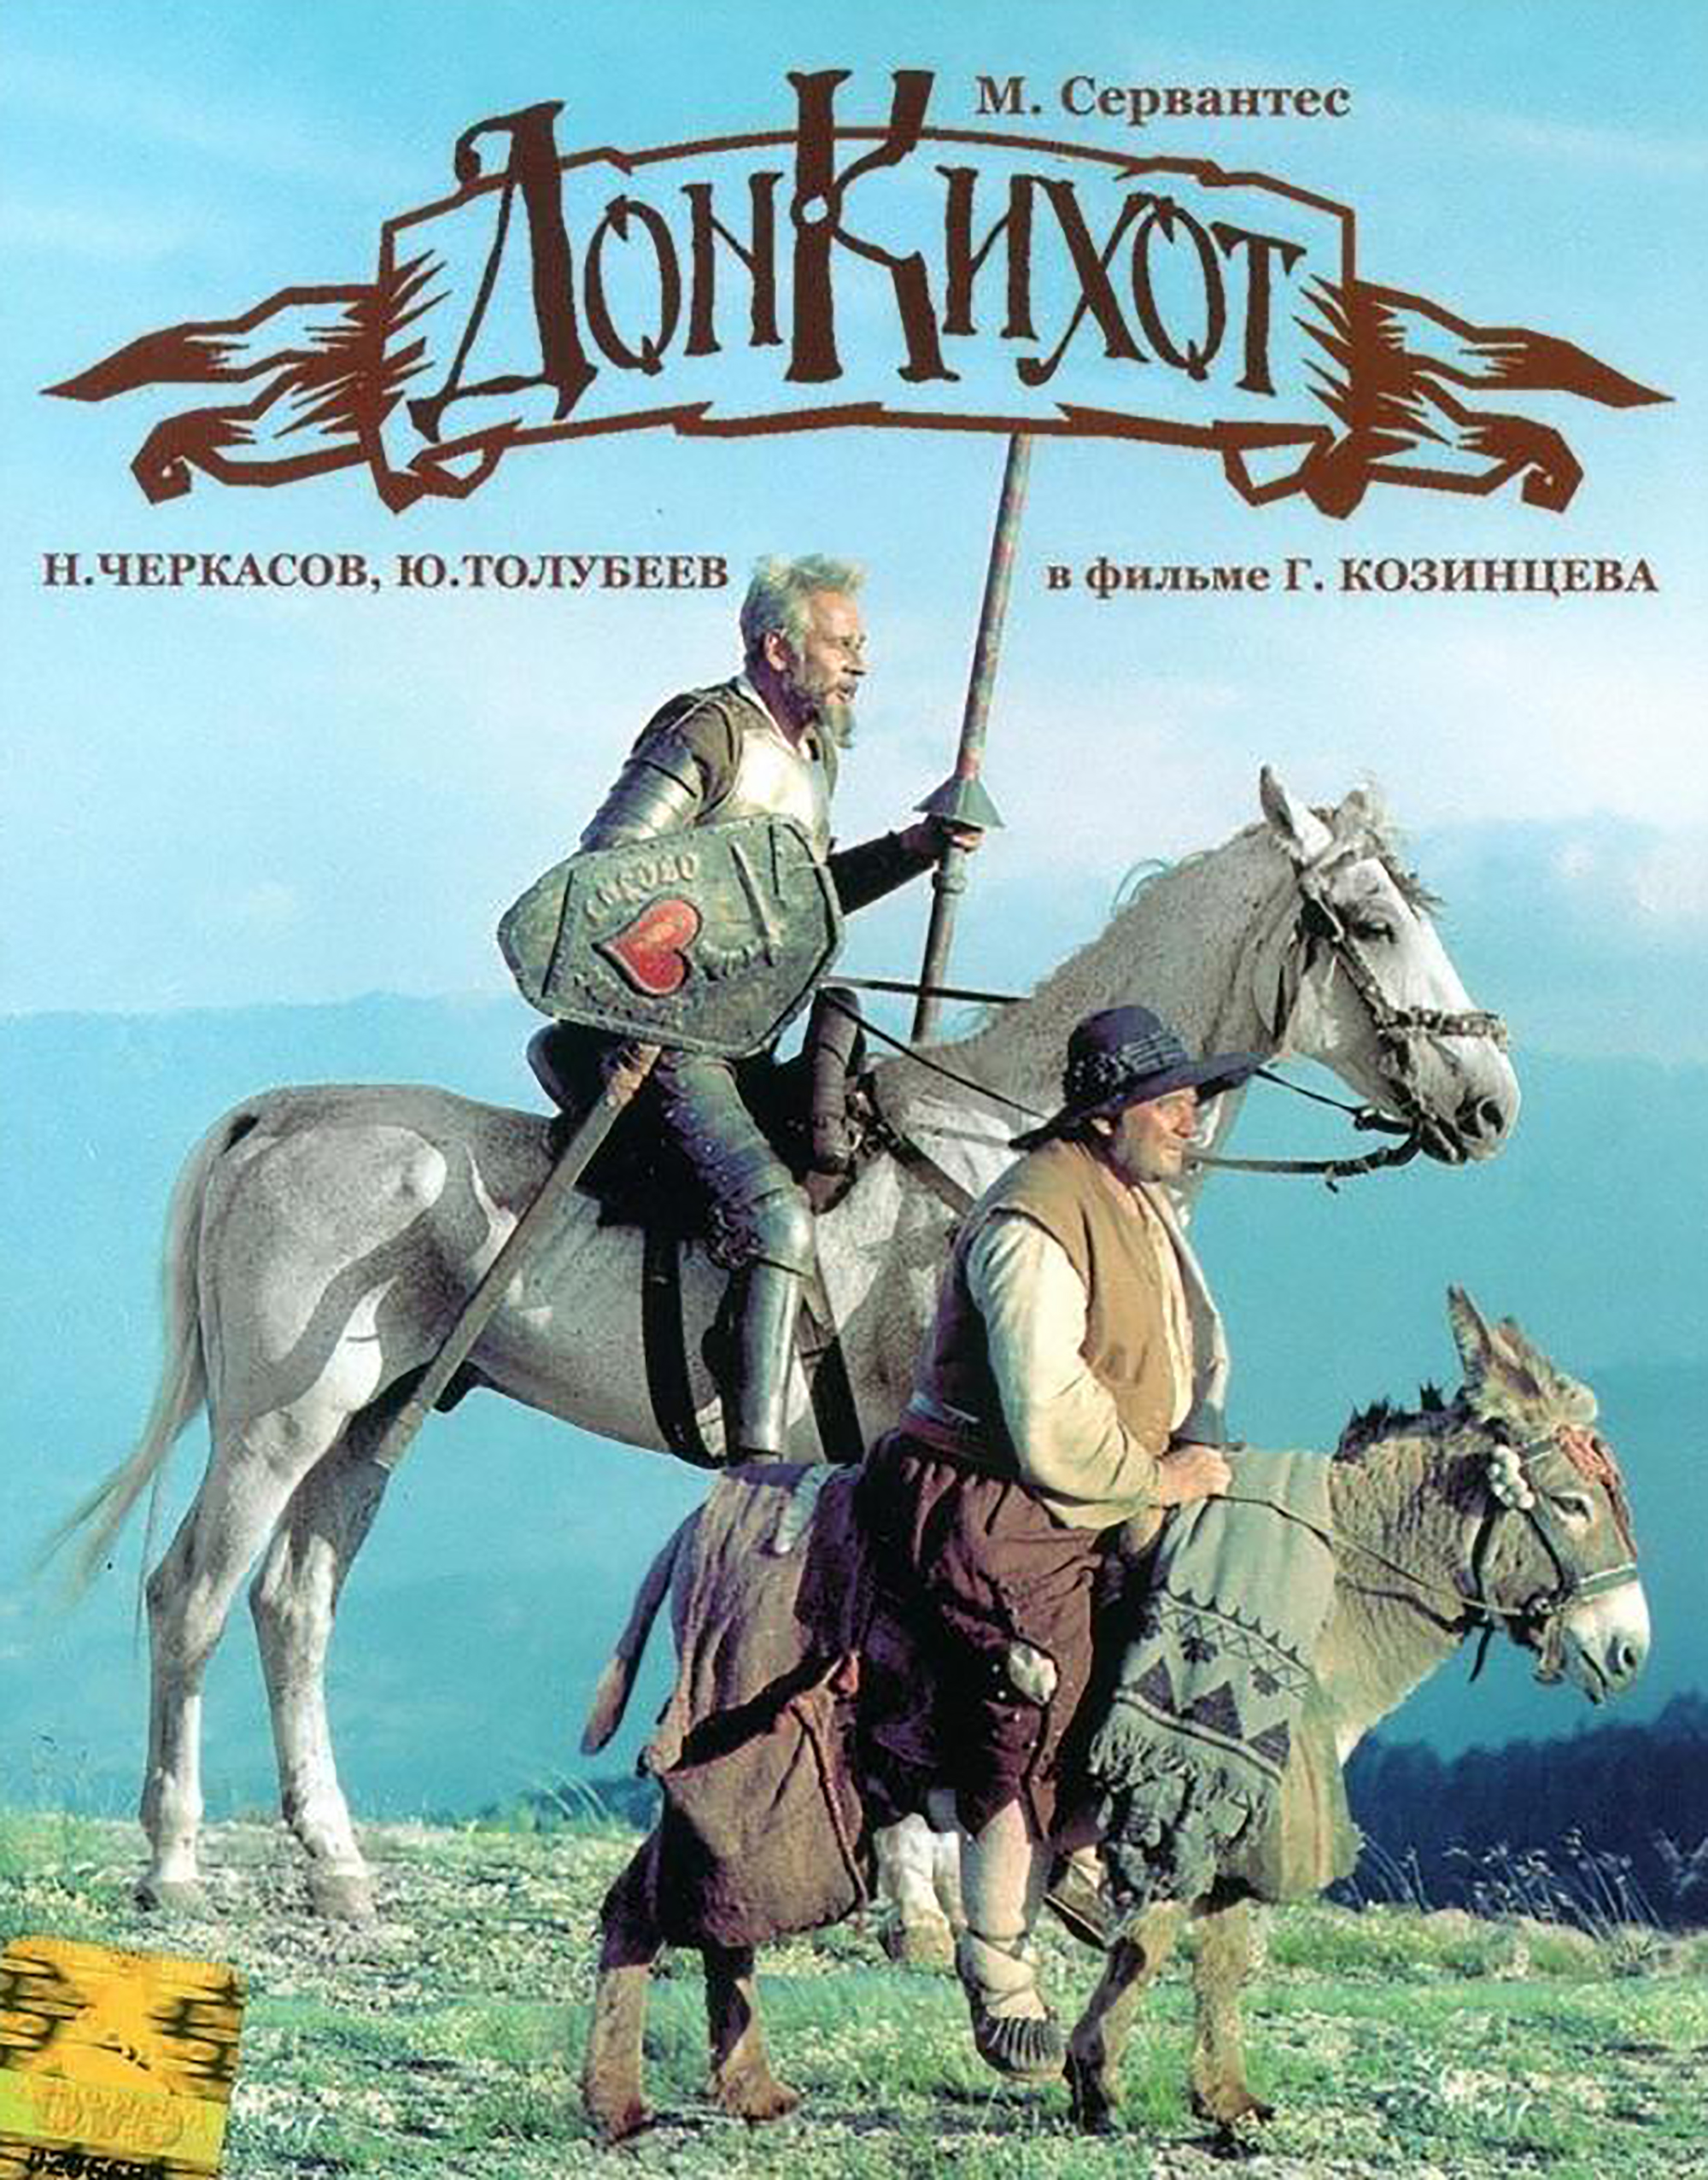 Don Quijote, película rusa 1957